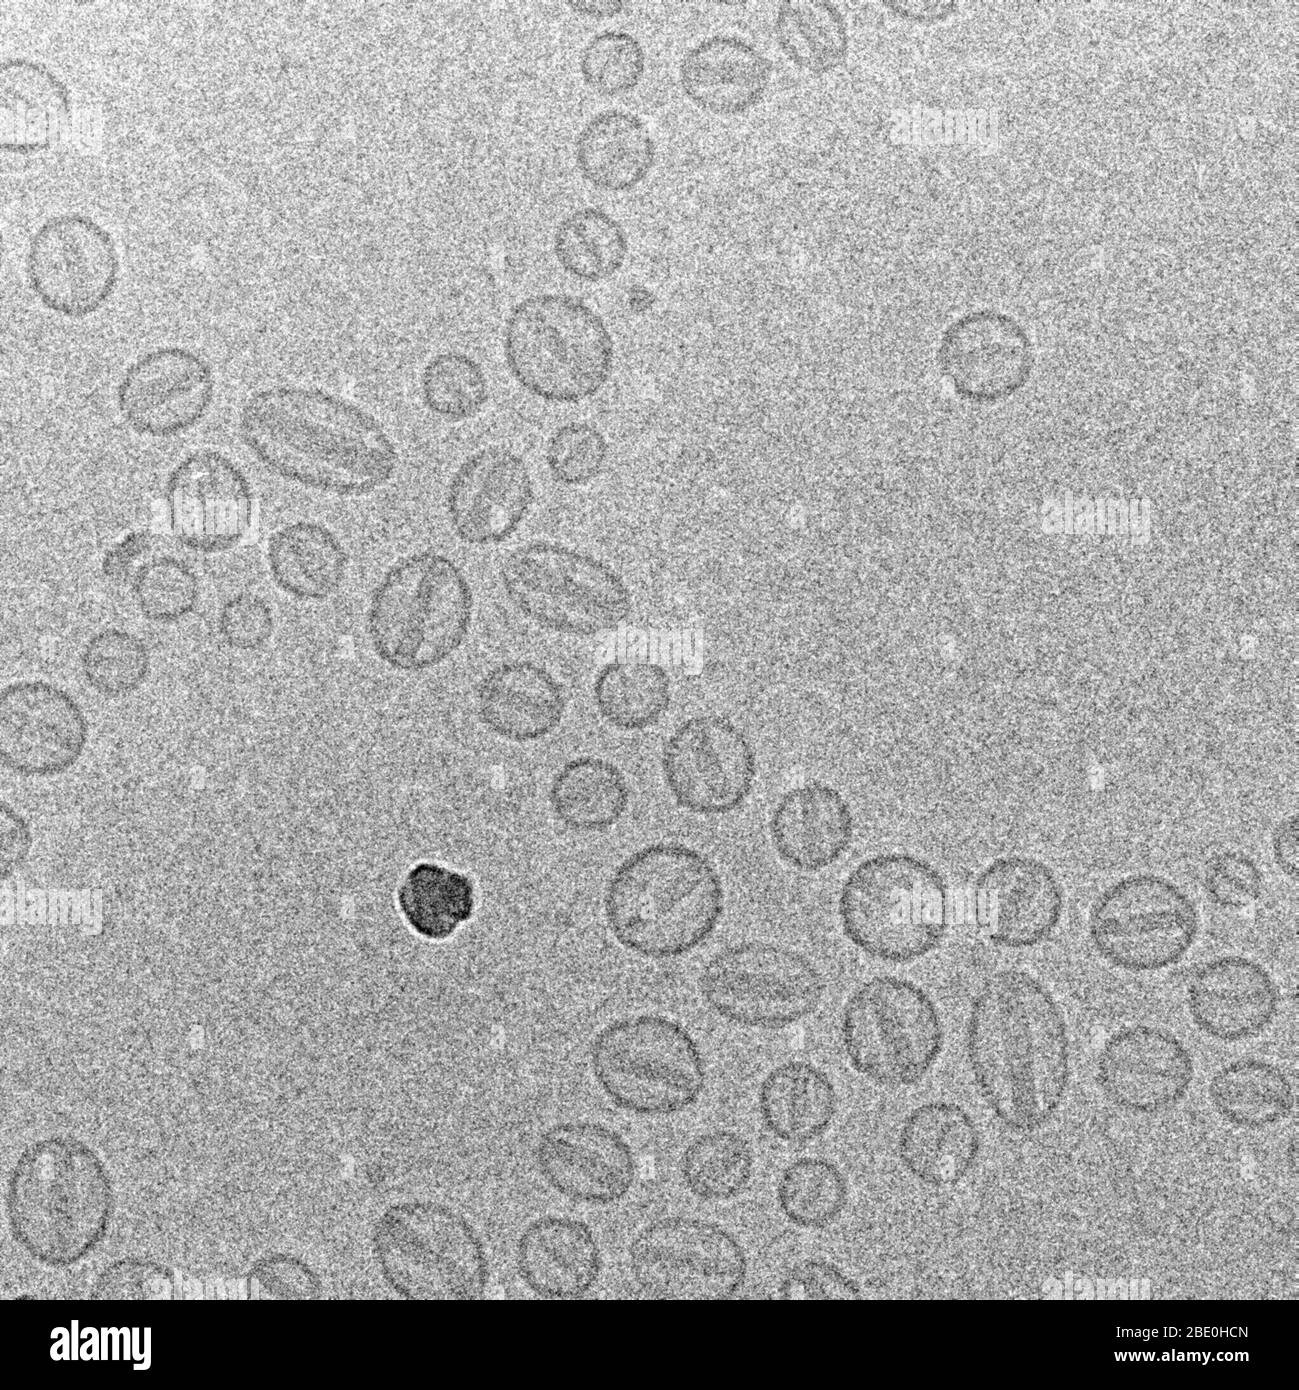 Trasmissione della micrografia elettronica (TEM) del farmaco chemioterapico Doxorubicina incapsulata in liposoma, nome commerciale Doxil. Ingrandimento sconosciuto. Foto Stock